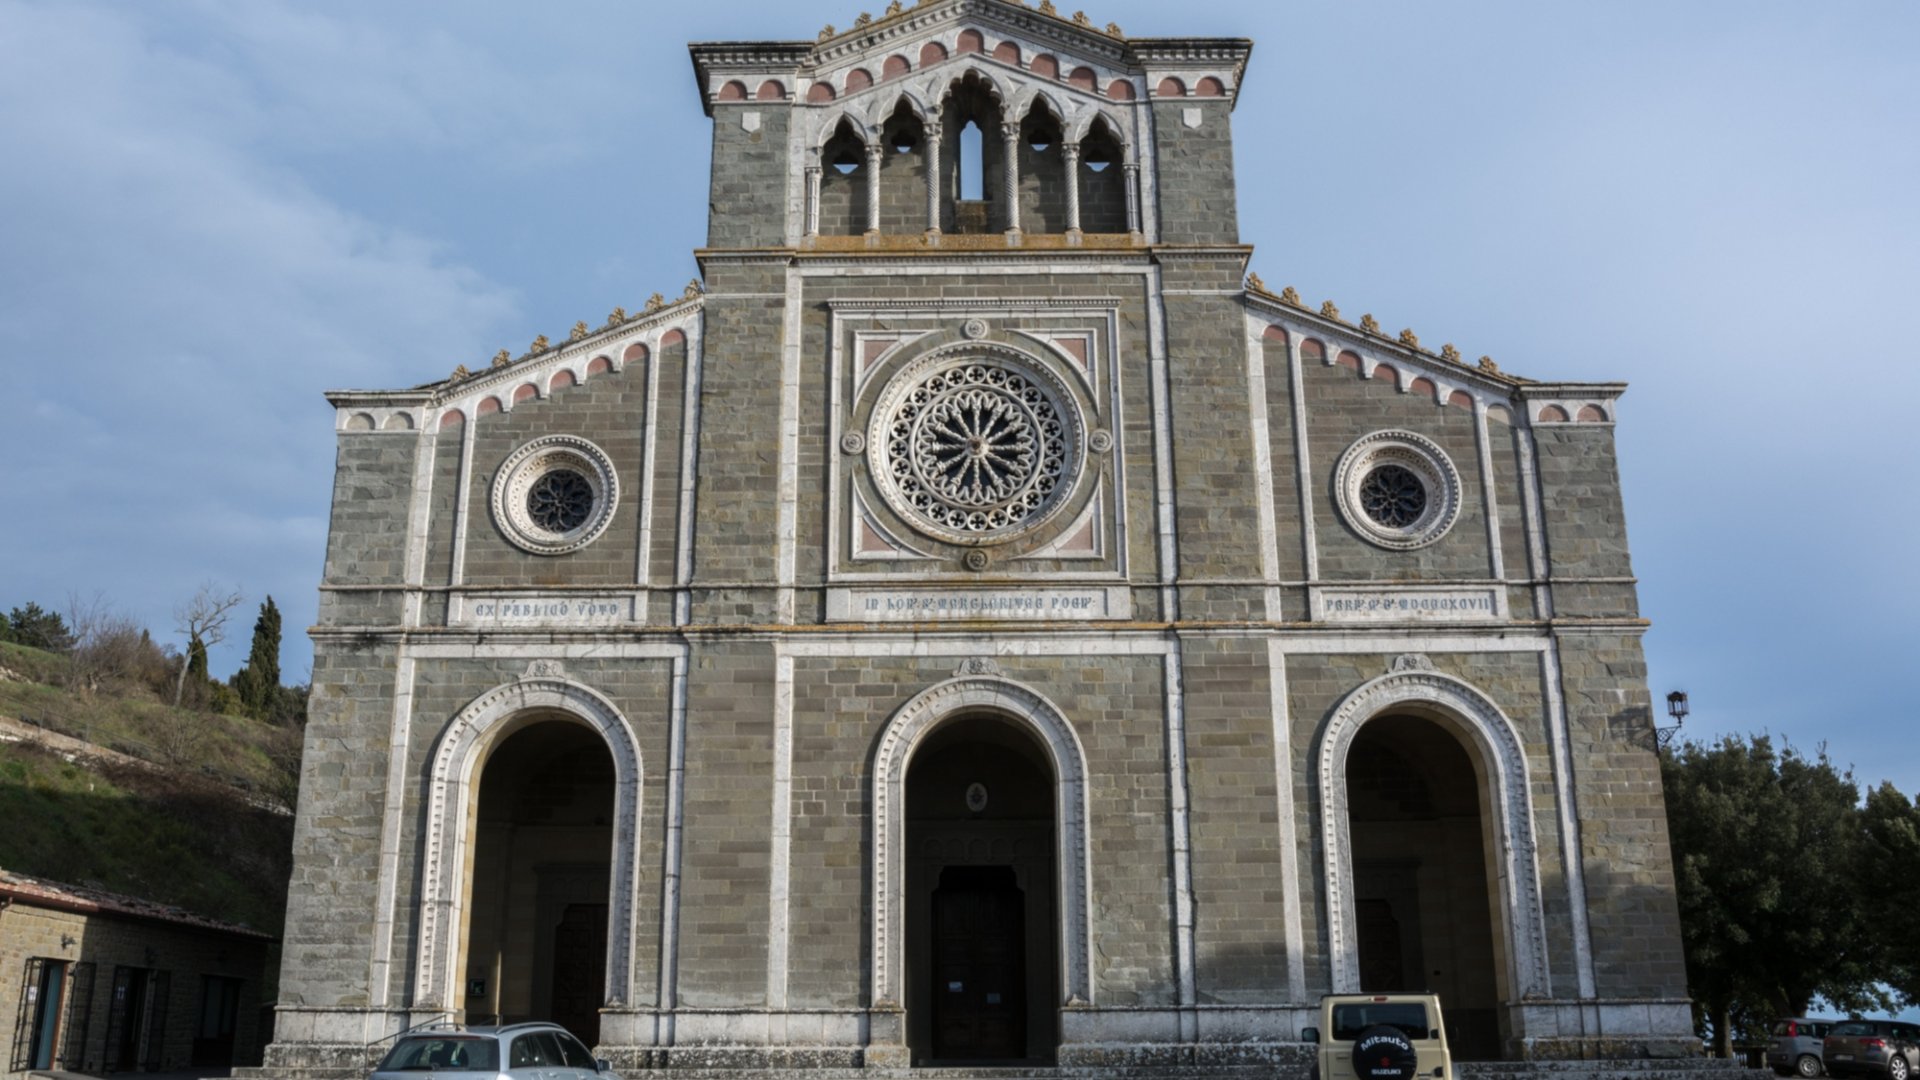 Basilica of Santa Margherita, facade